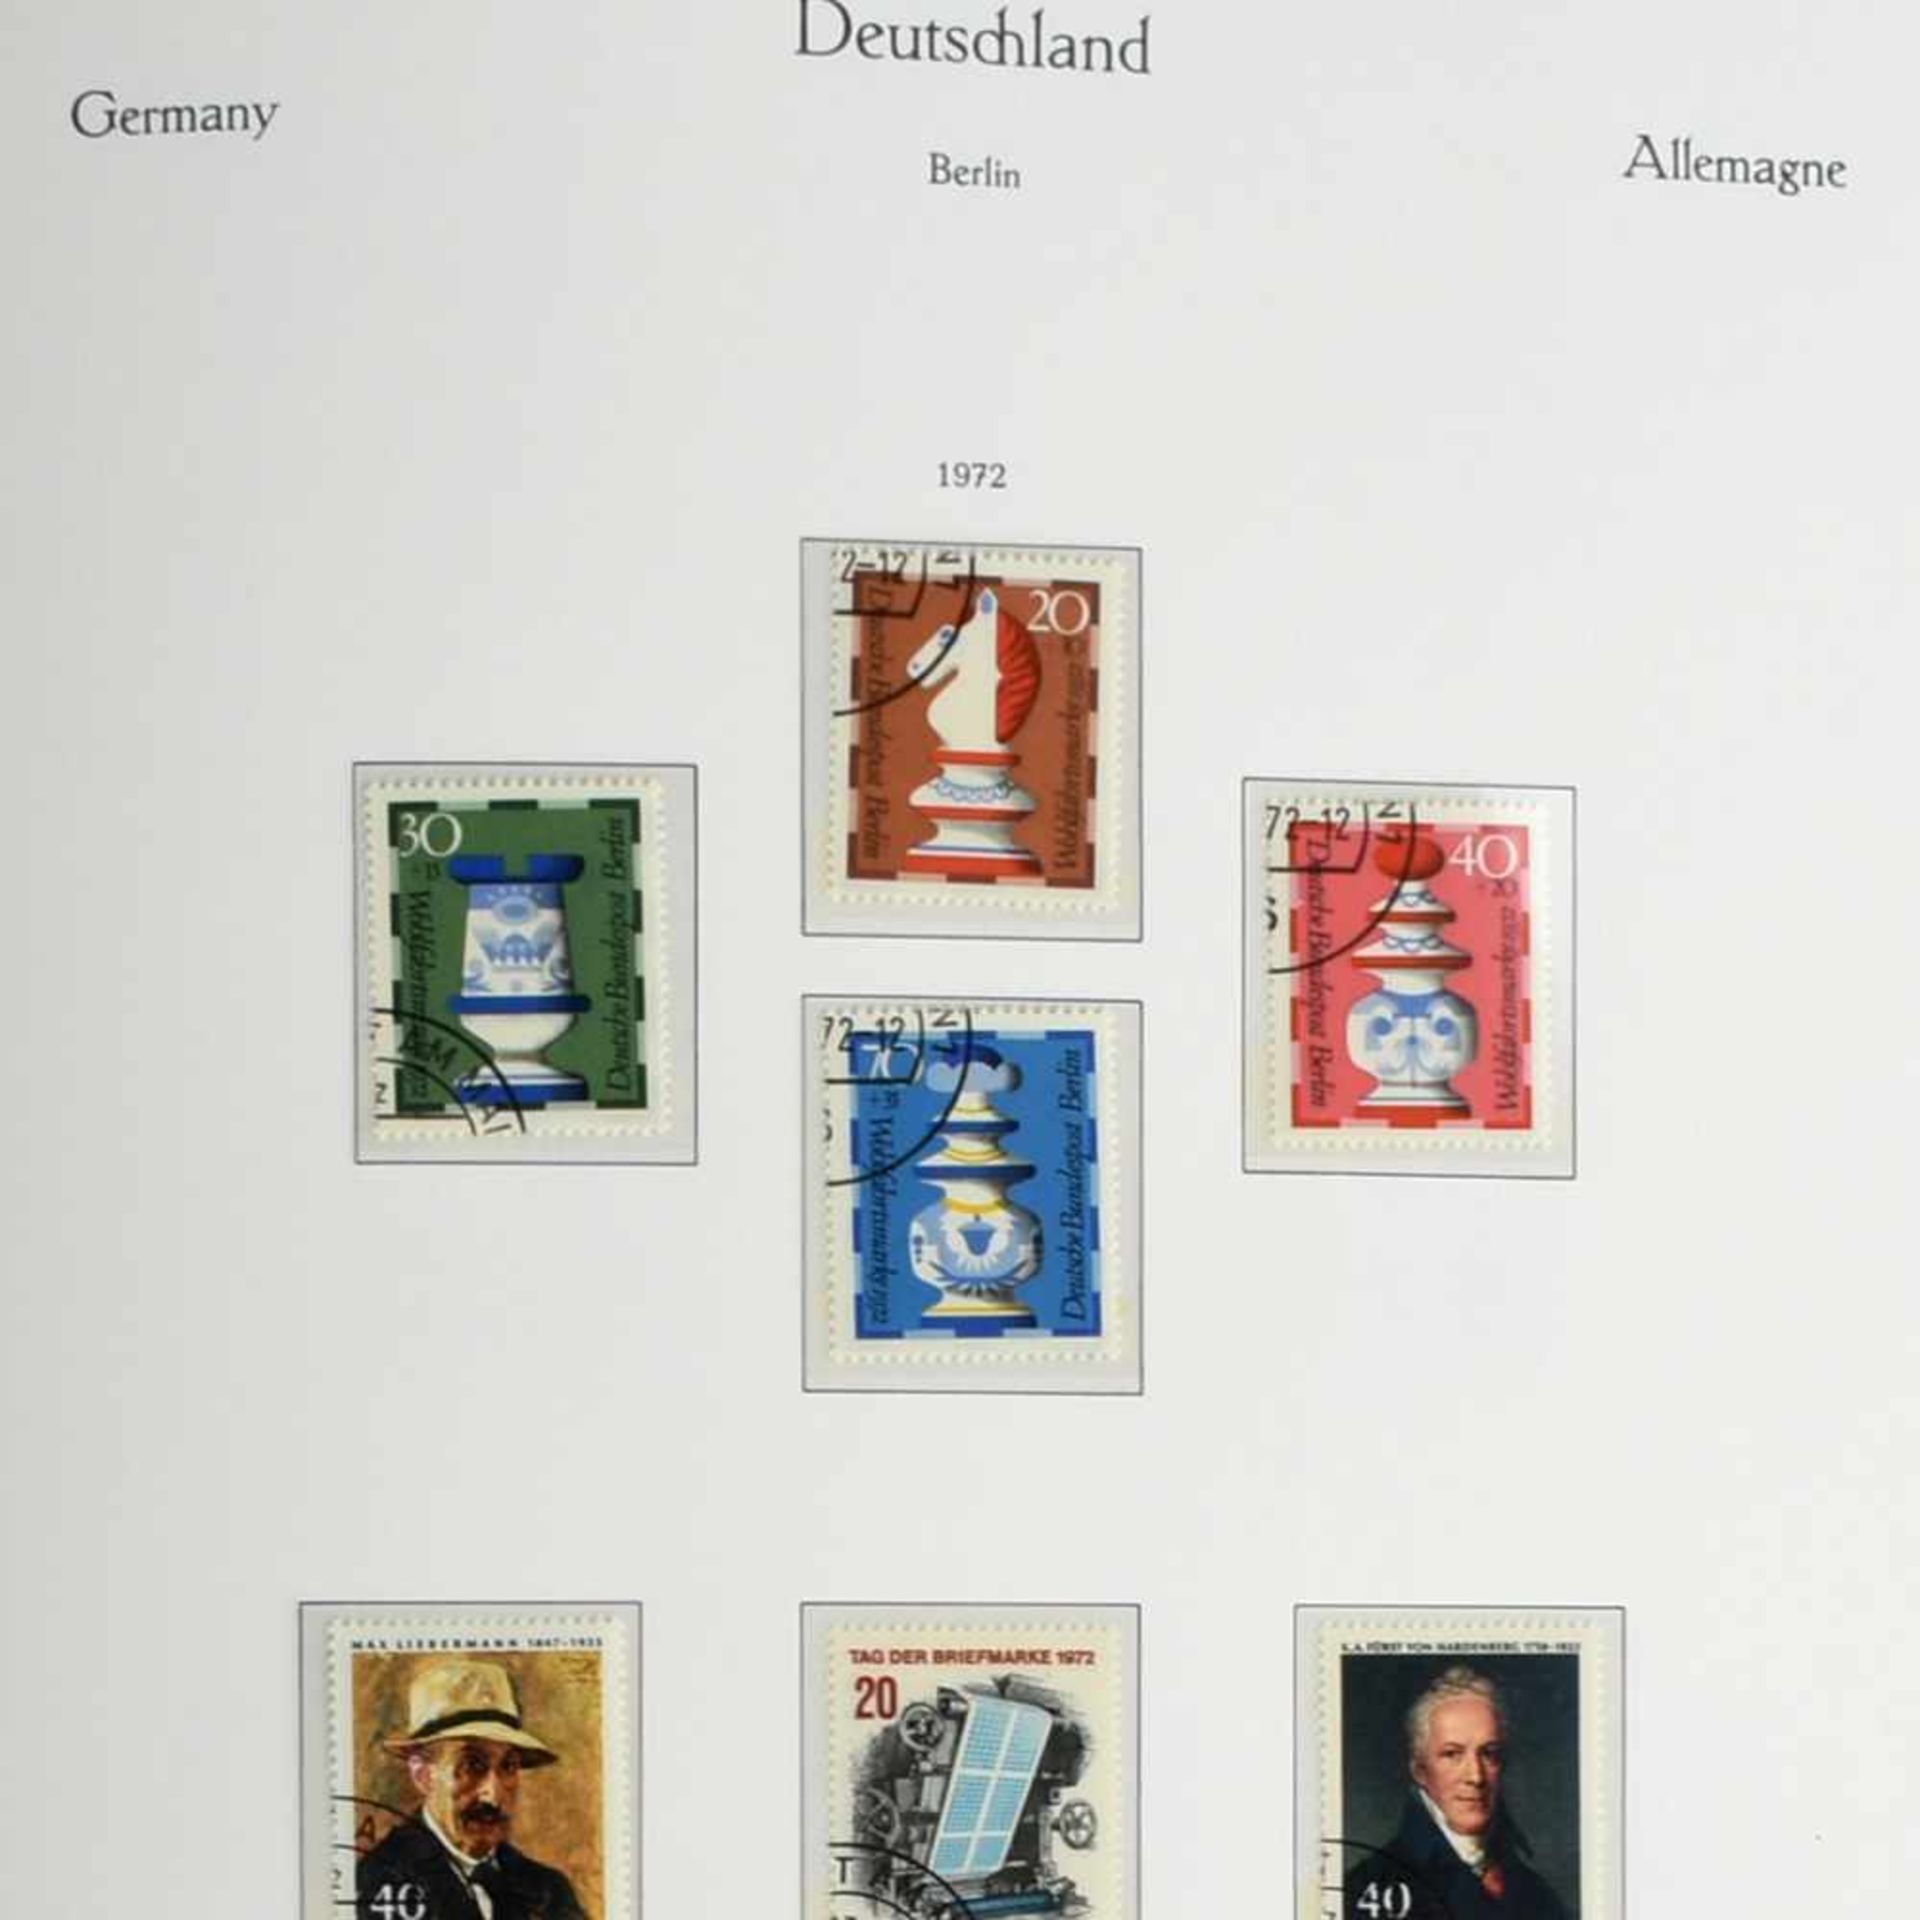 Sammlung Briefmarken Westberlin postfrisch und gestempelt (saubere Rundstempel), jew. Zeitraum